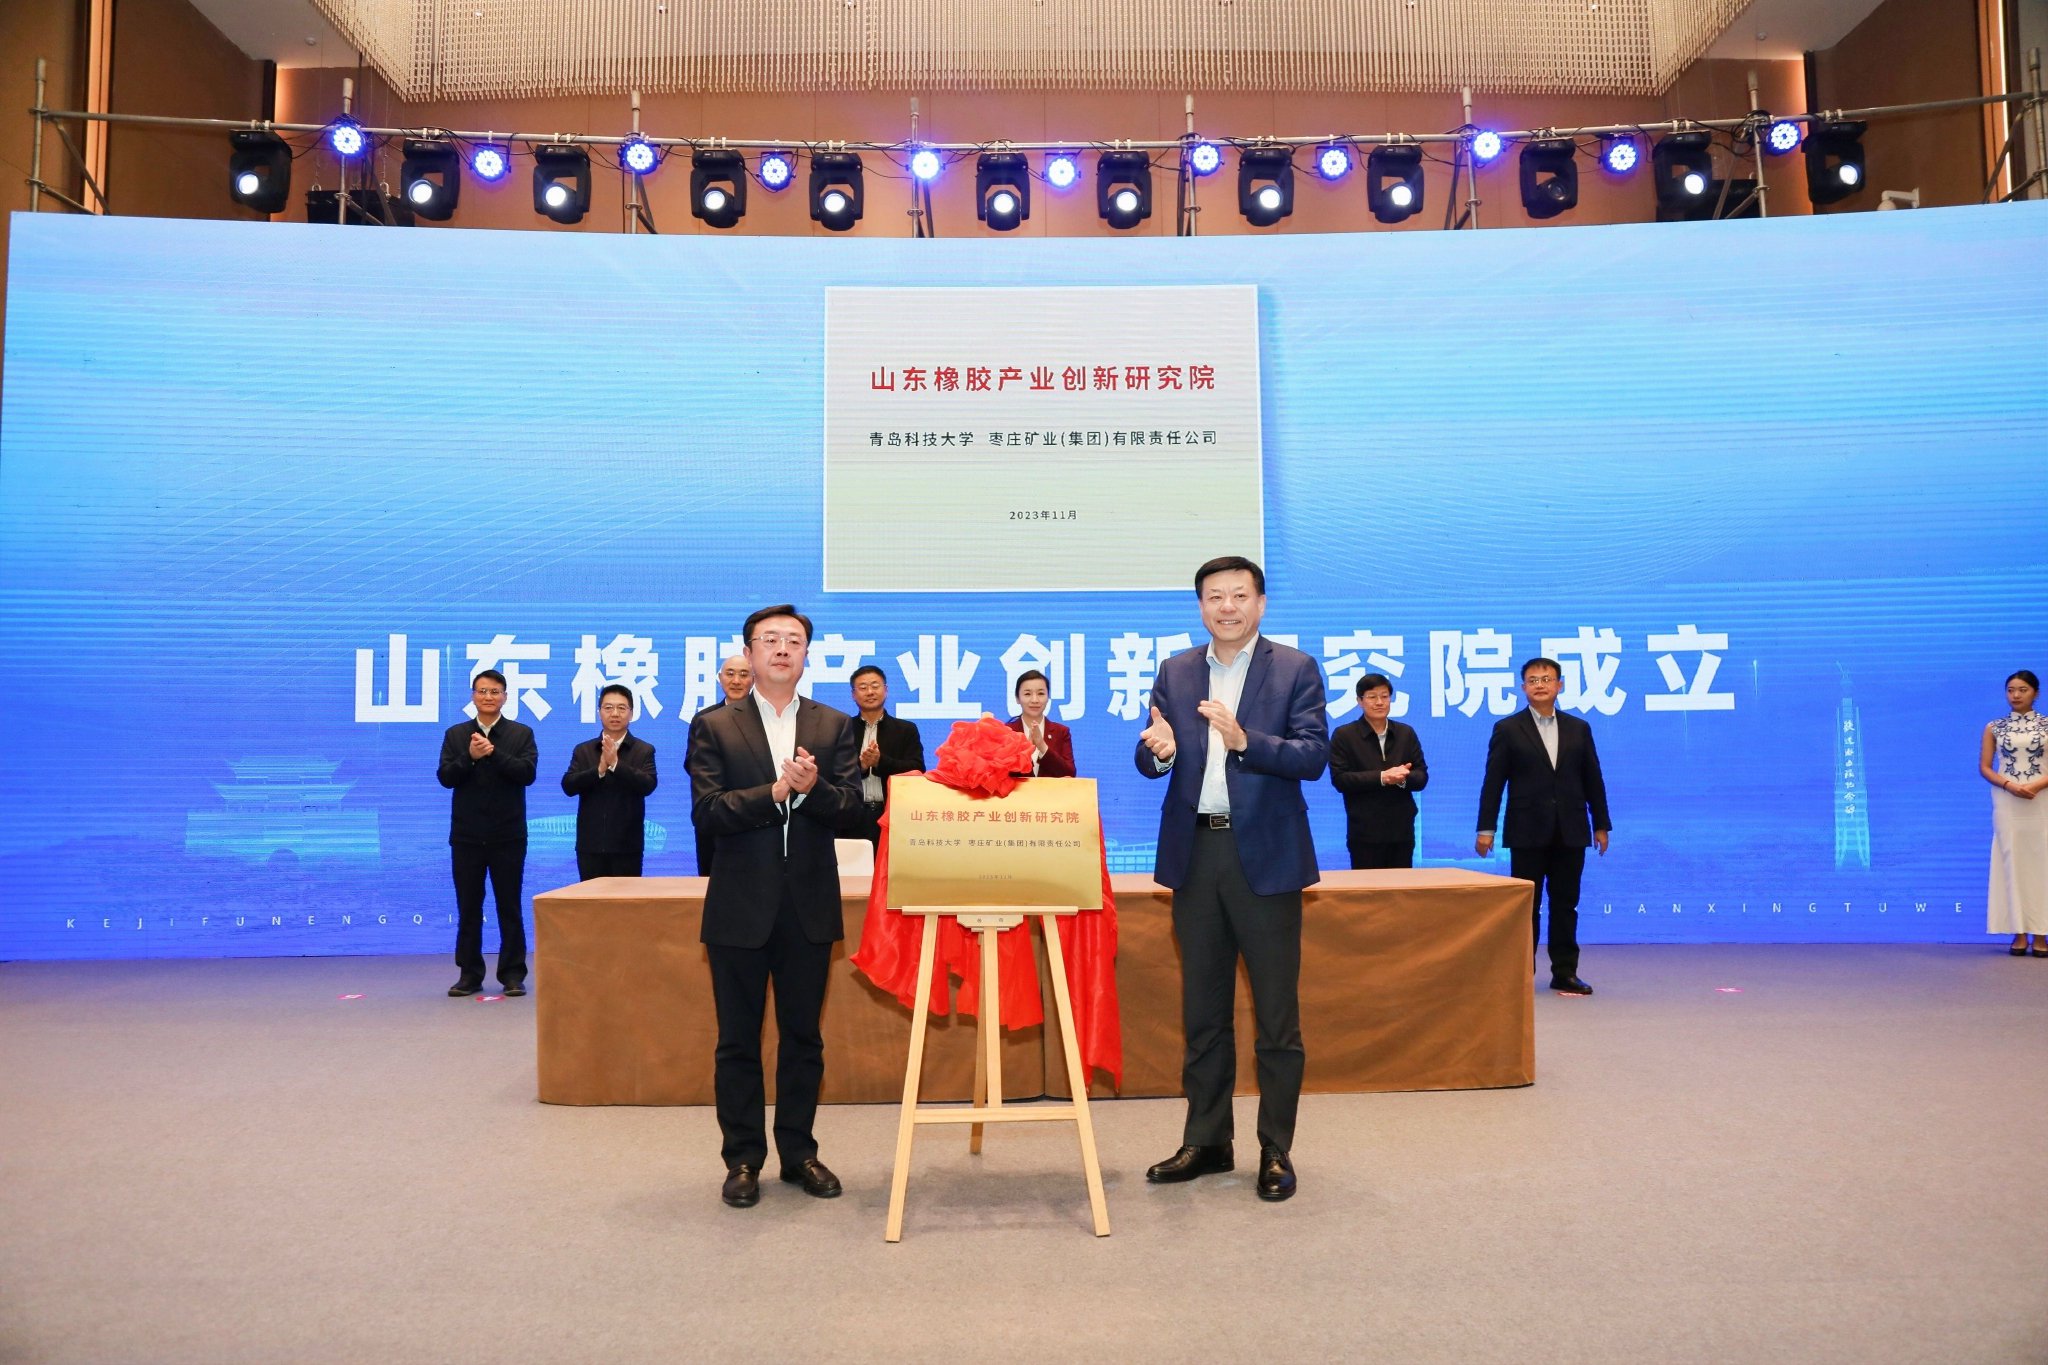 天津高端医疗器械创新研究院暨创新转化产业化公共平台正式启动运行